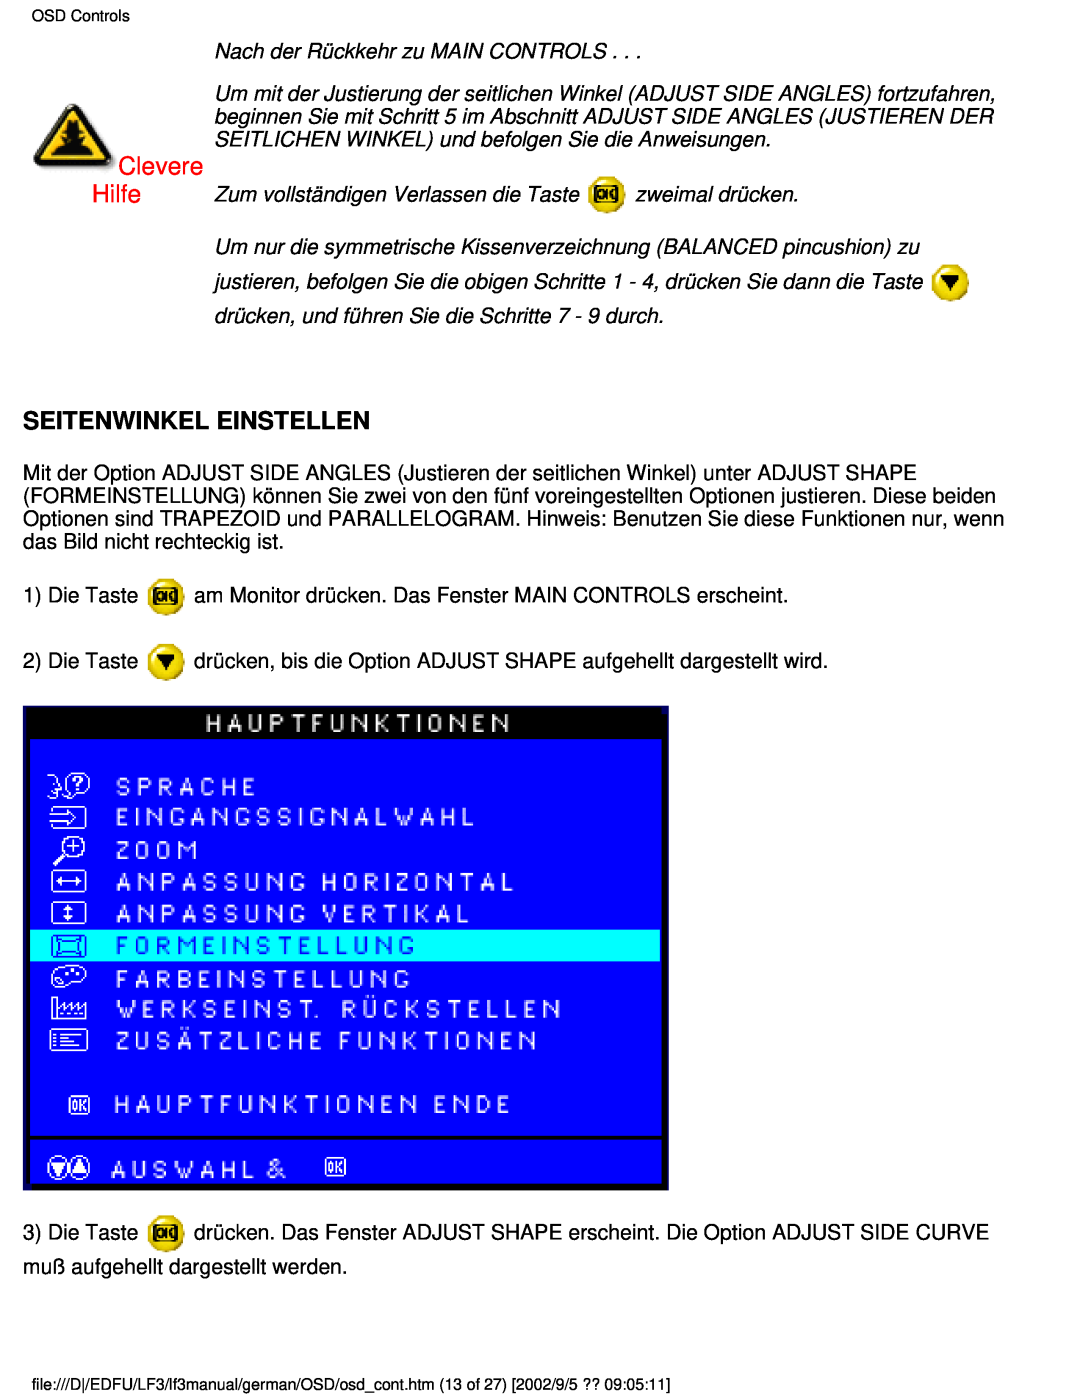 Philips 107E user manual Seitenwinkel Einstellen, Clevere Hilfe, Nach der Rückkehr zu MAIN CONTROLS 